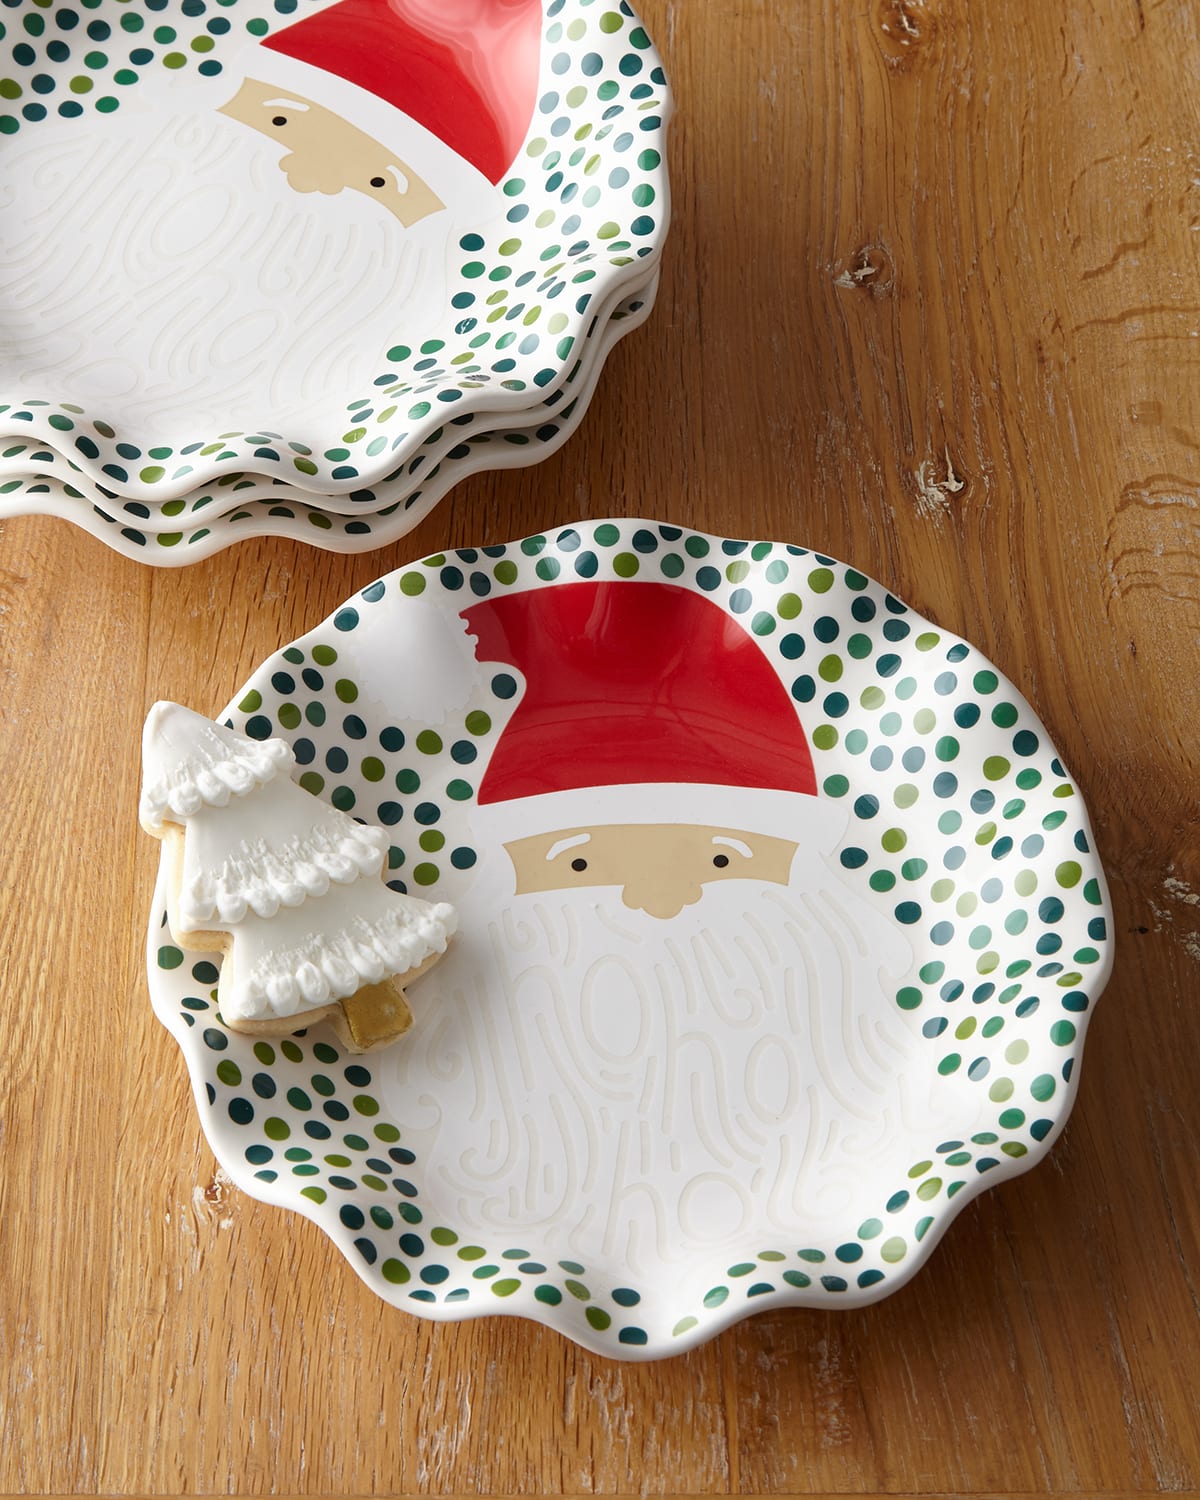 Image Coton Colors Ho Ho Santa Ruffle Christmas Plates, Set of 4